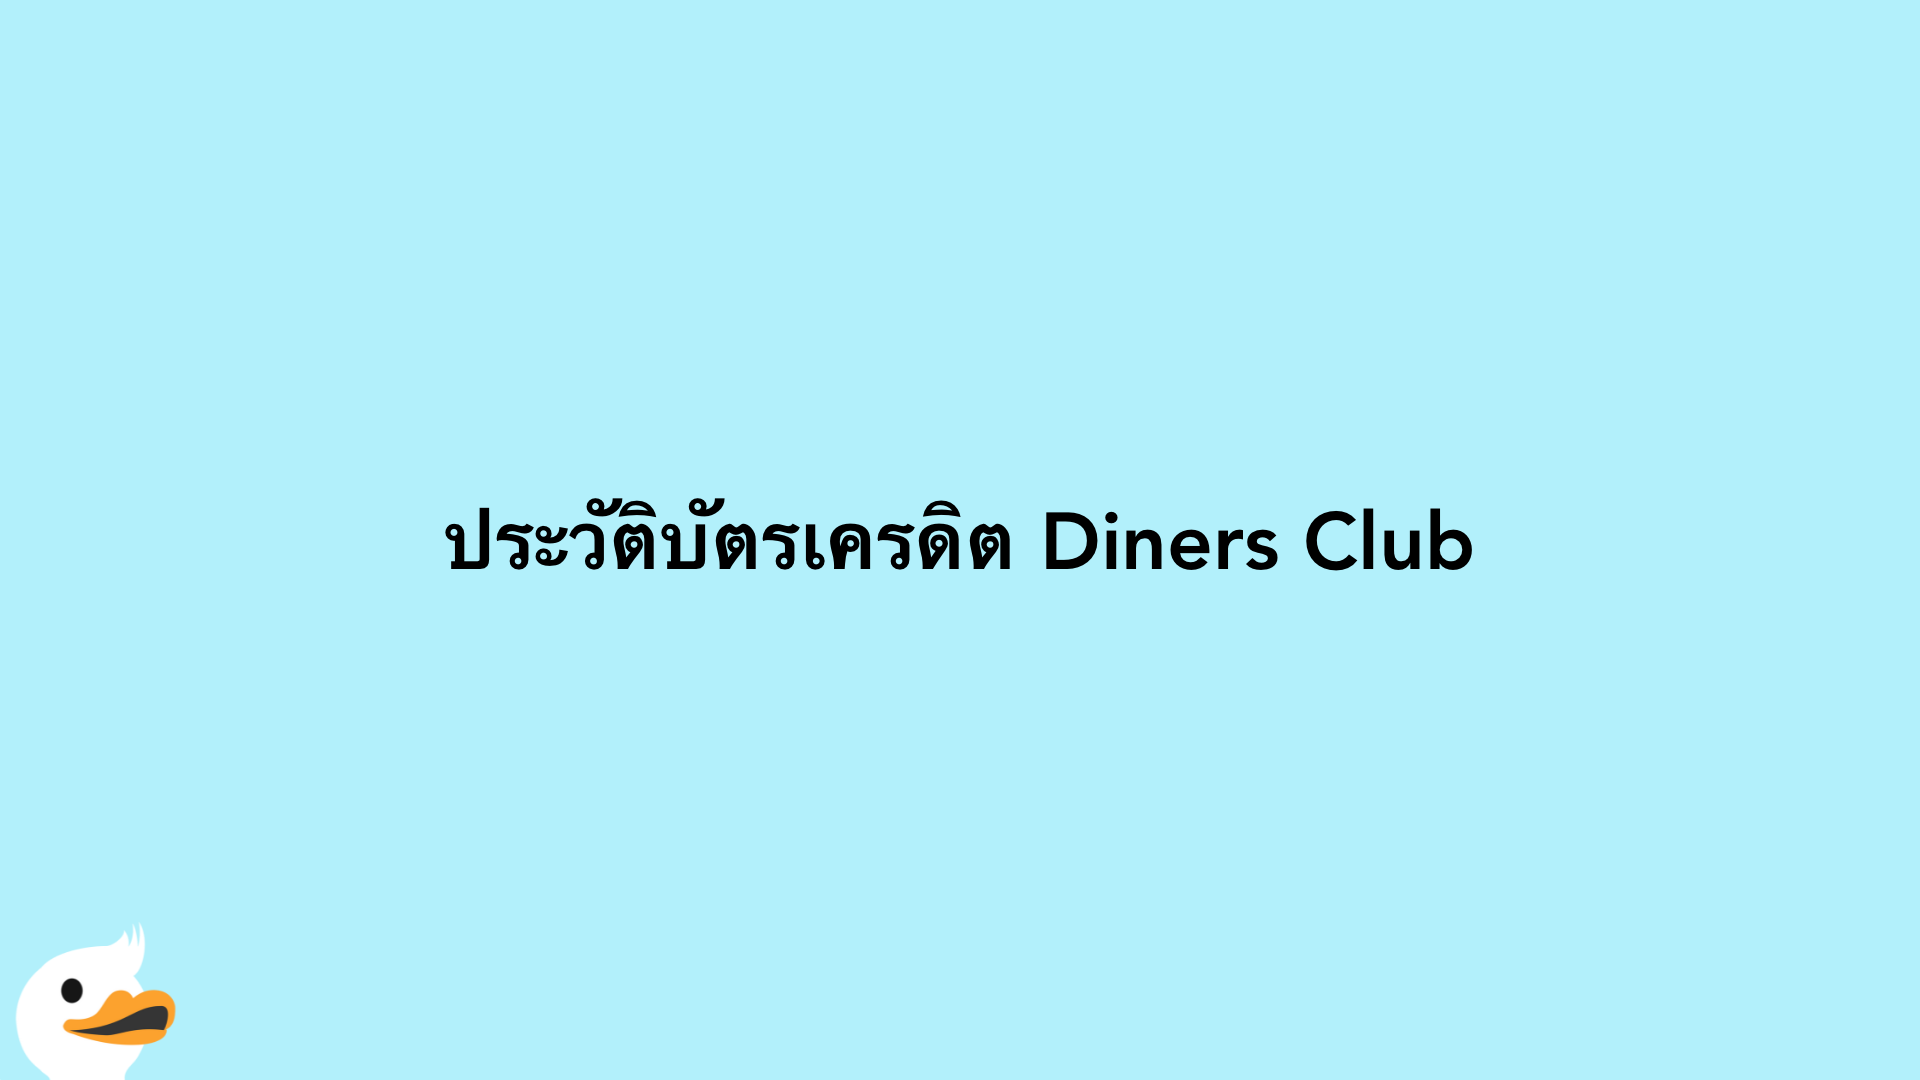 ประวัติบัตรเครดิต Diners Club